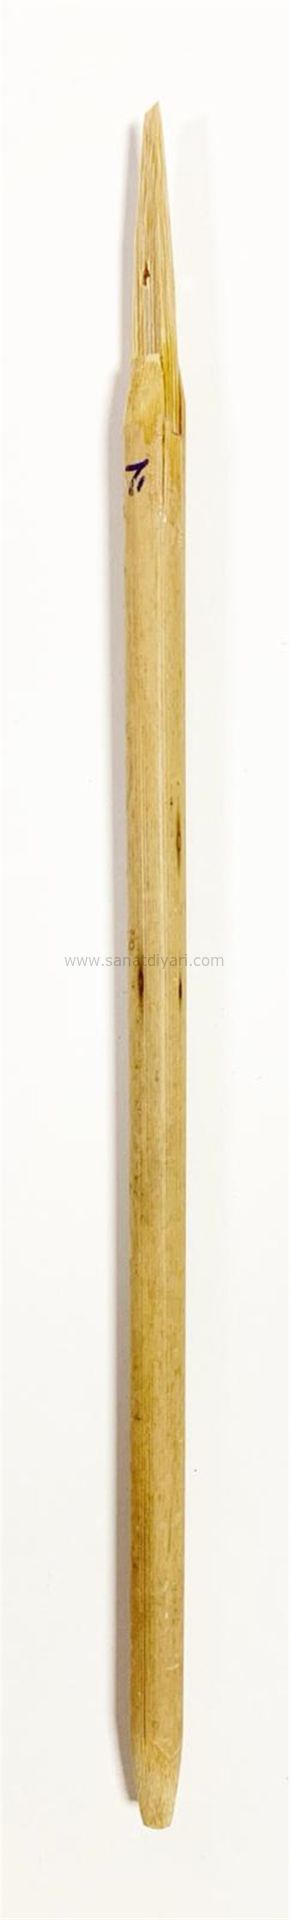 Tiryakiart Şaklı Bambu Kalem 2 mm